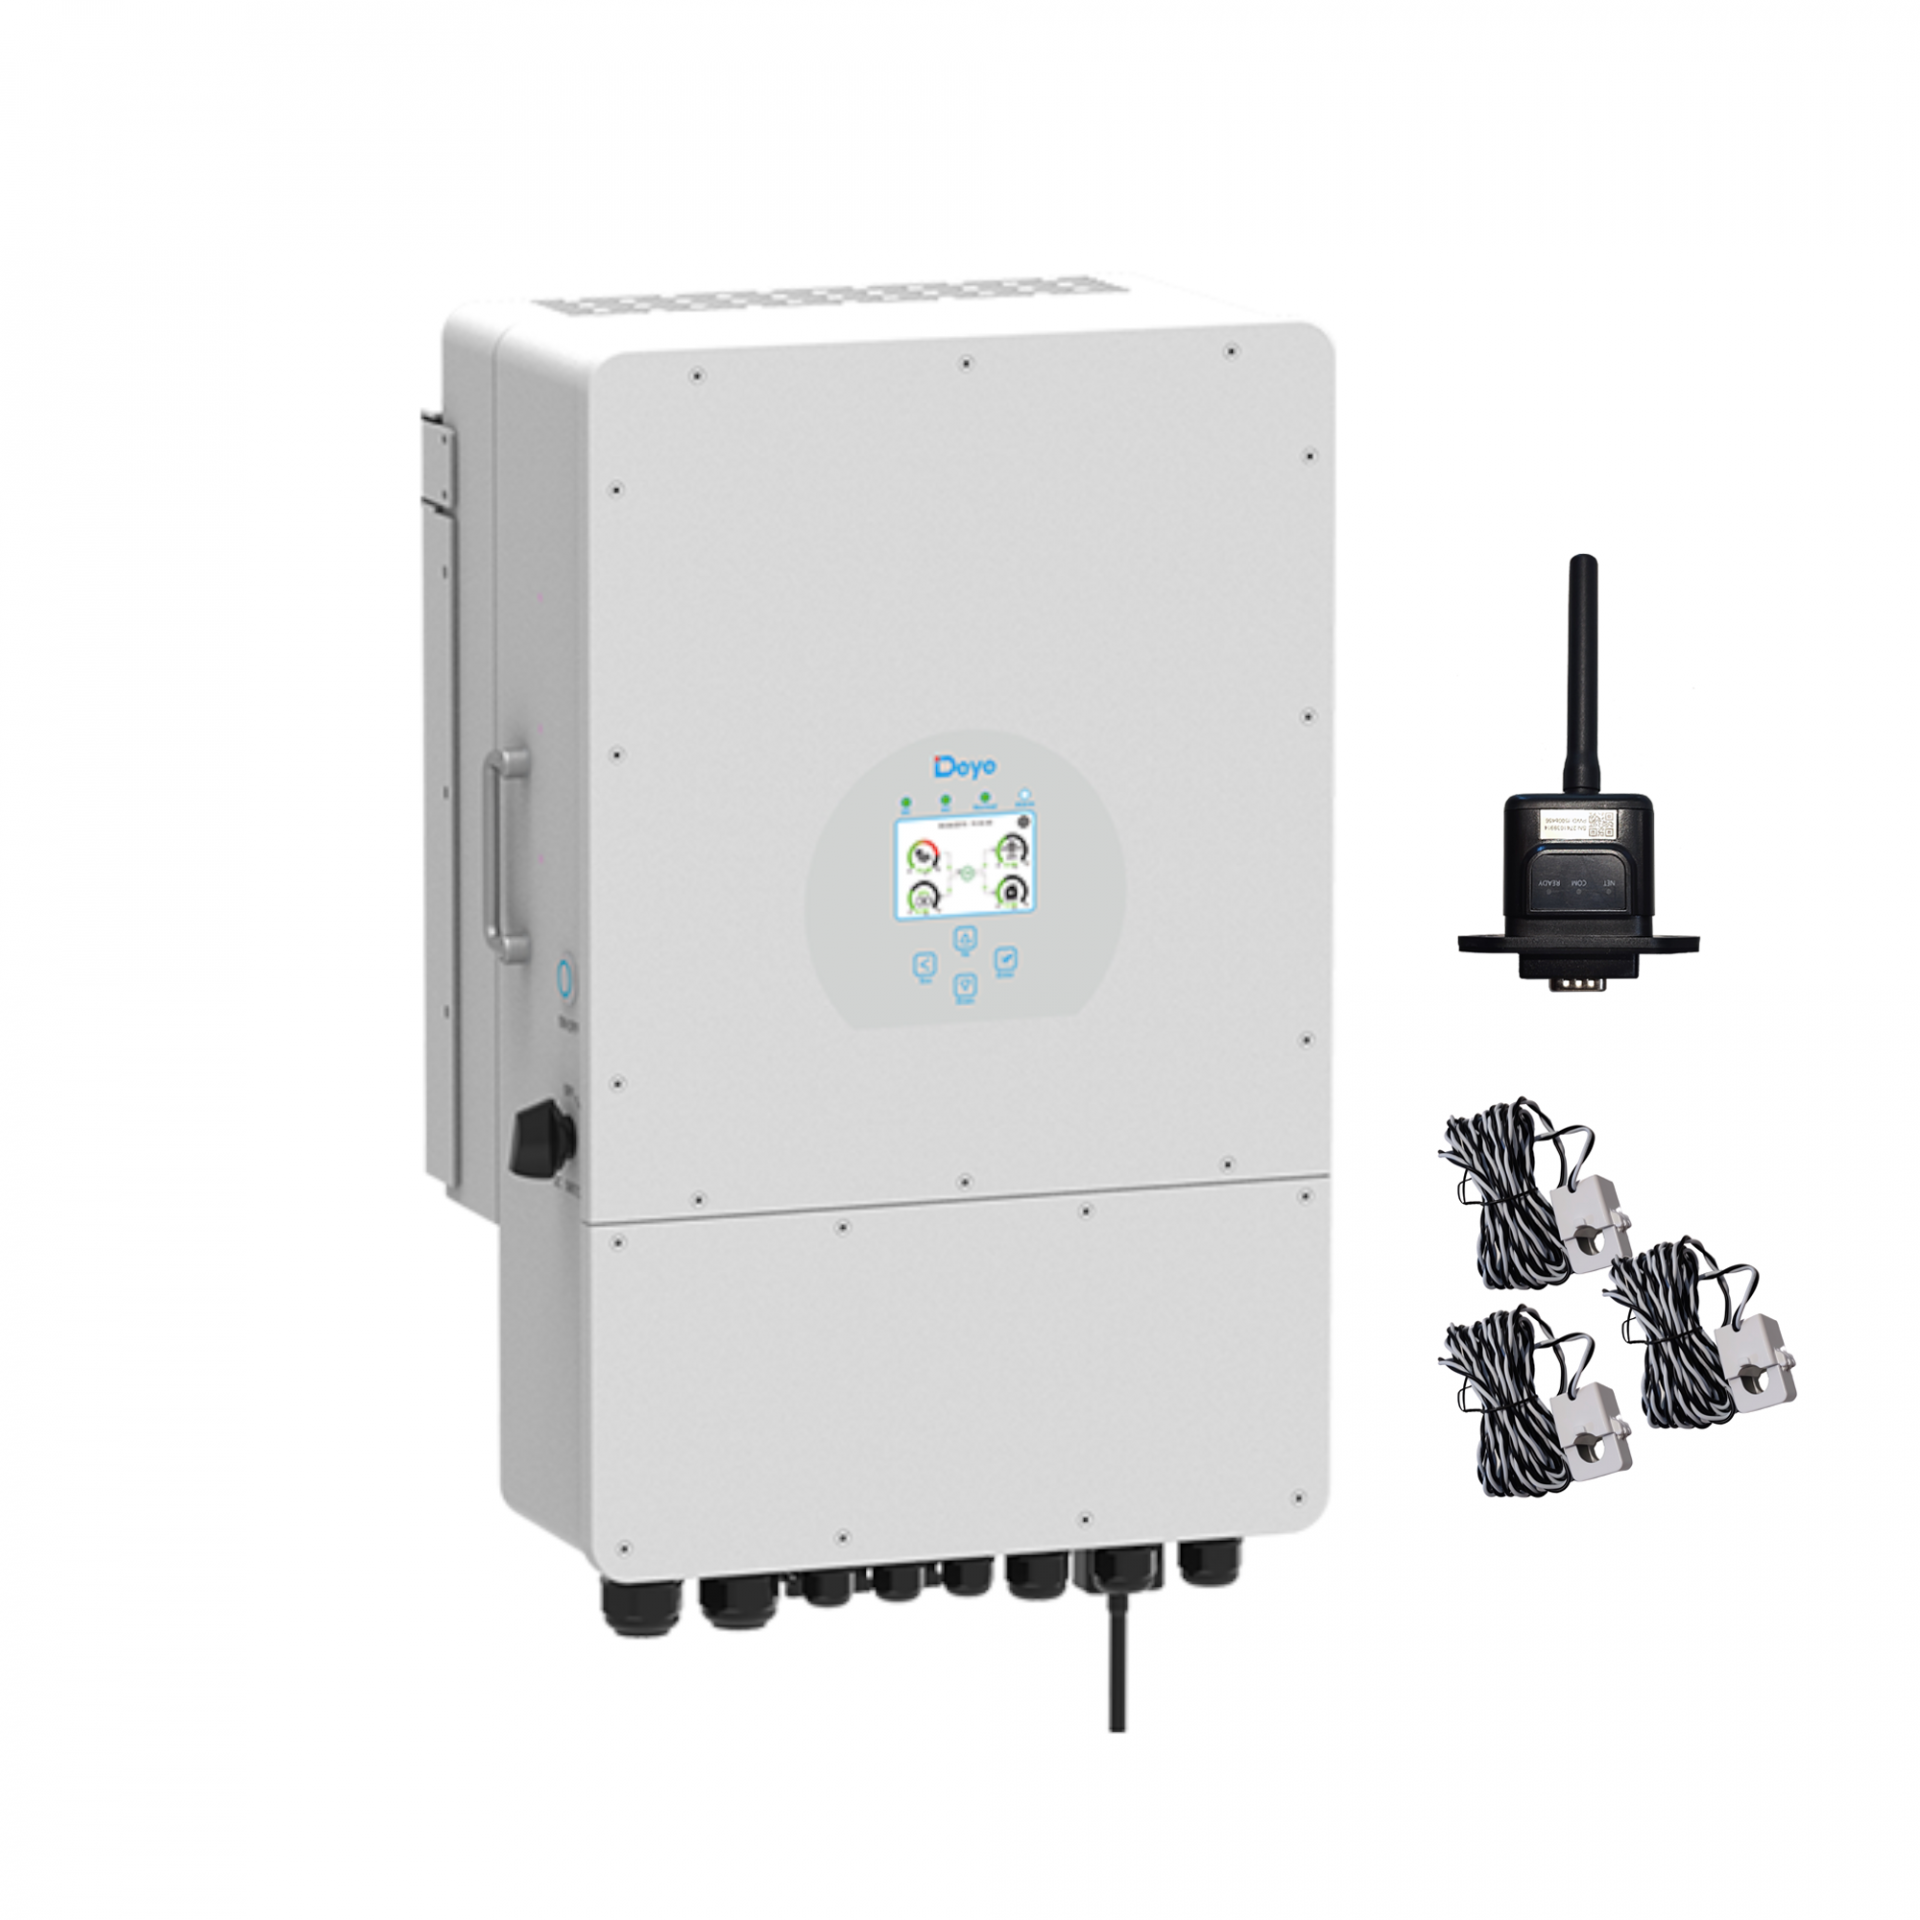  Dreiphasen Hybrid-Wechselrichter Deye SUN-10K-SG04LP3-EU (7800Wp PV-Leistung)